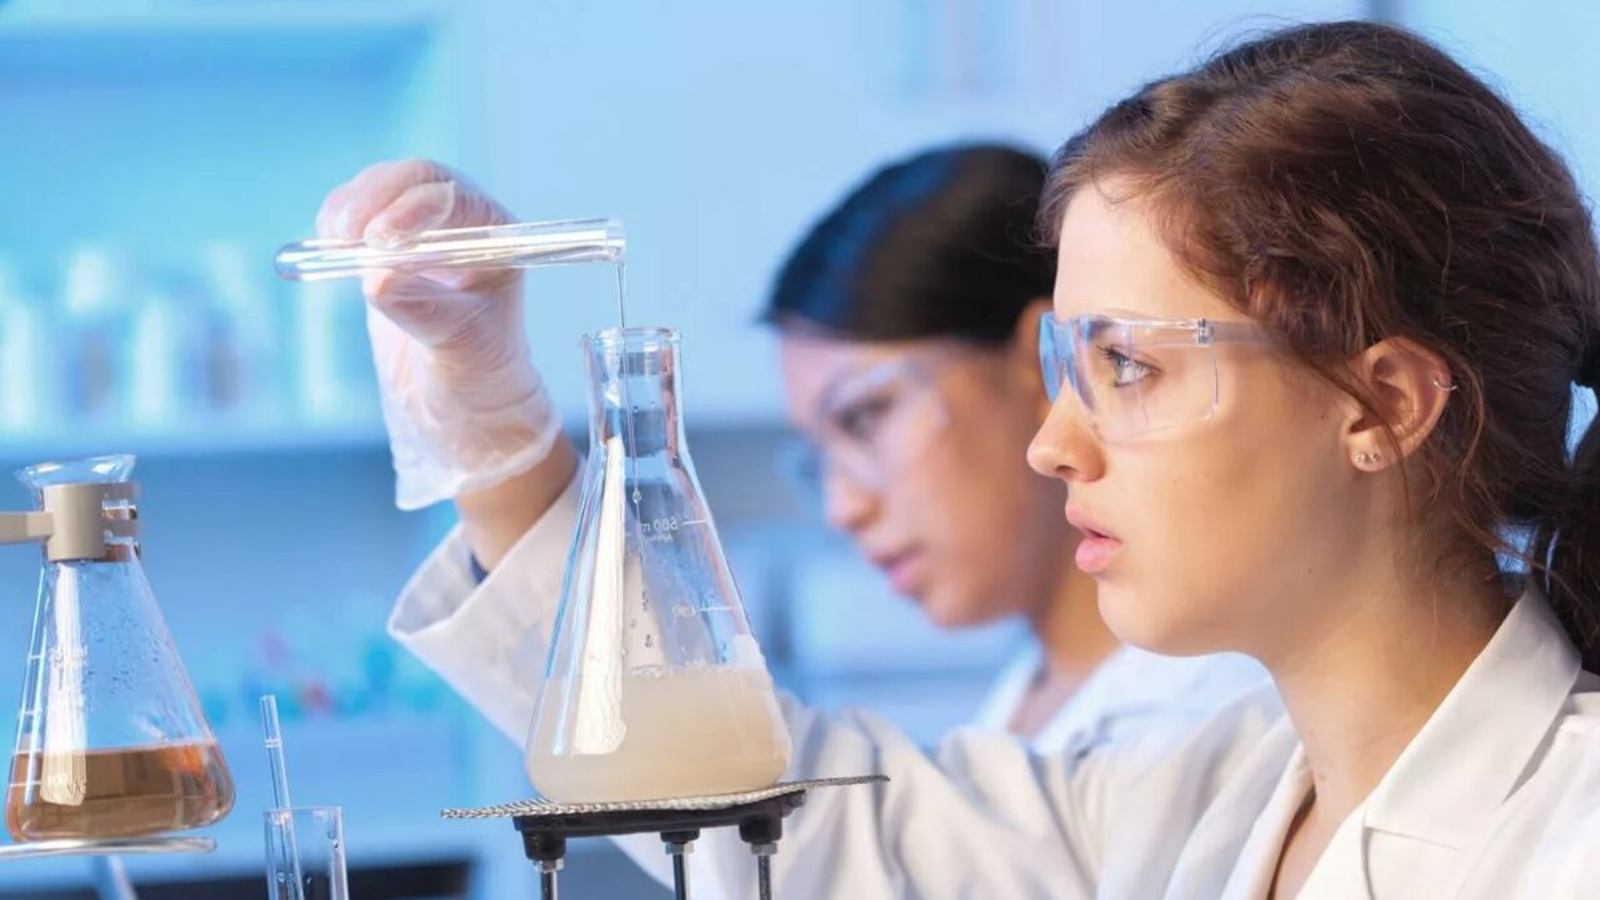 Наличие наука. Химические опыты в лаборатории. Студенты в лаборатории. Лаборатория для химических экспериментов. Биологи в лаборатории студенты.